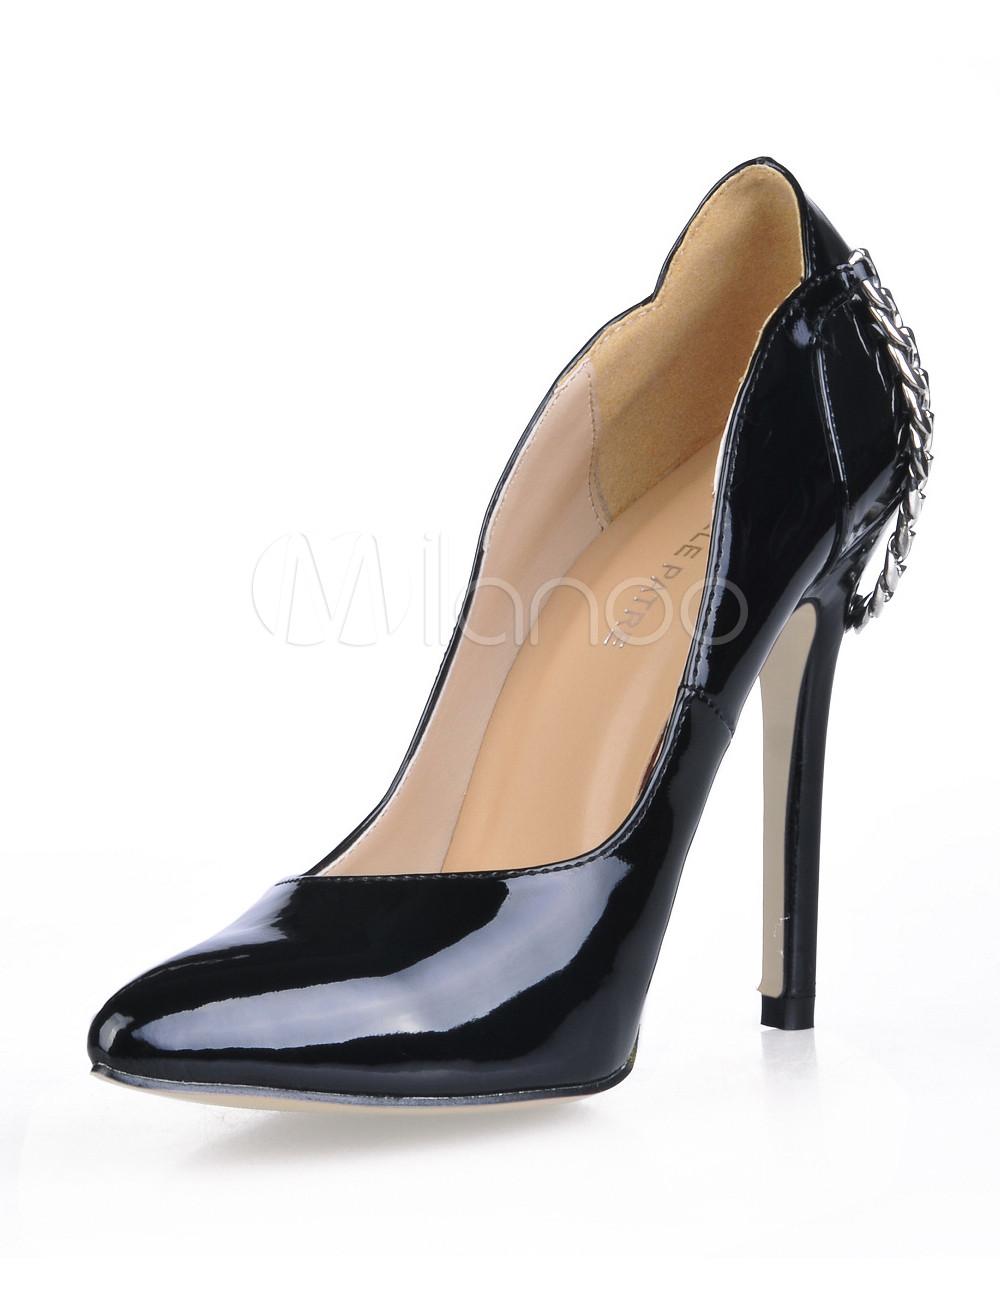 Foto Zapatos de punta triangular con pala de charol negros con cadena